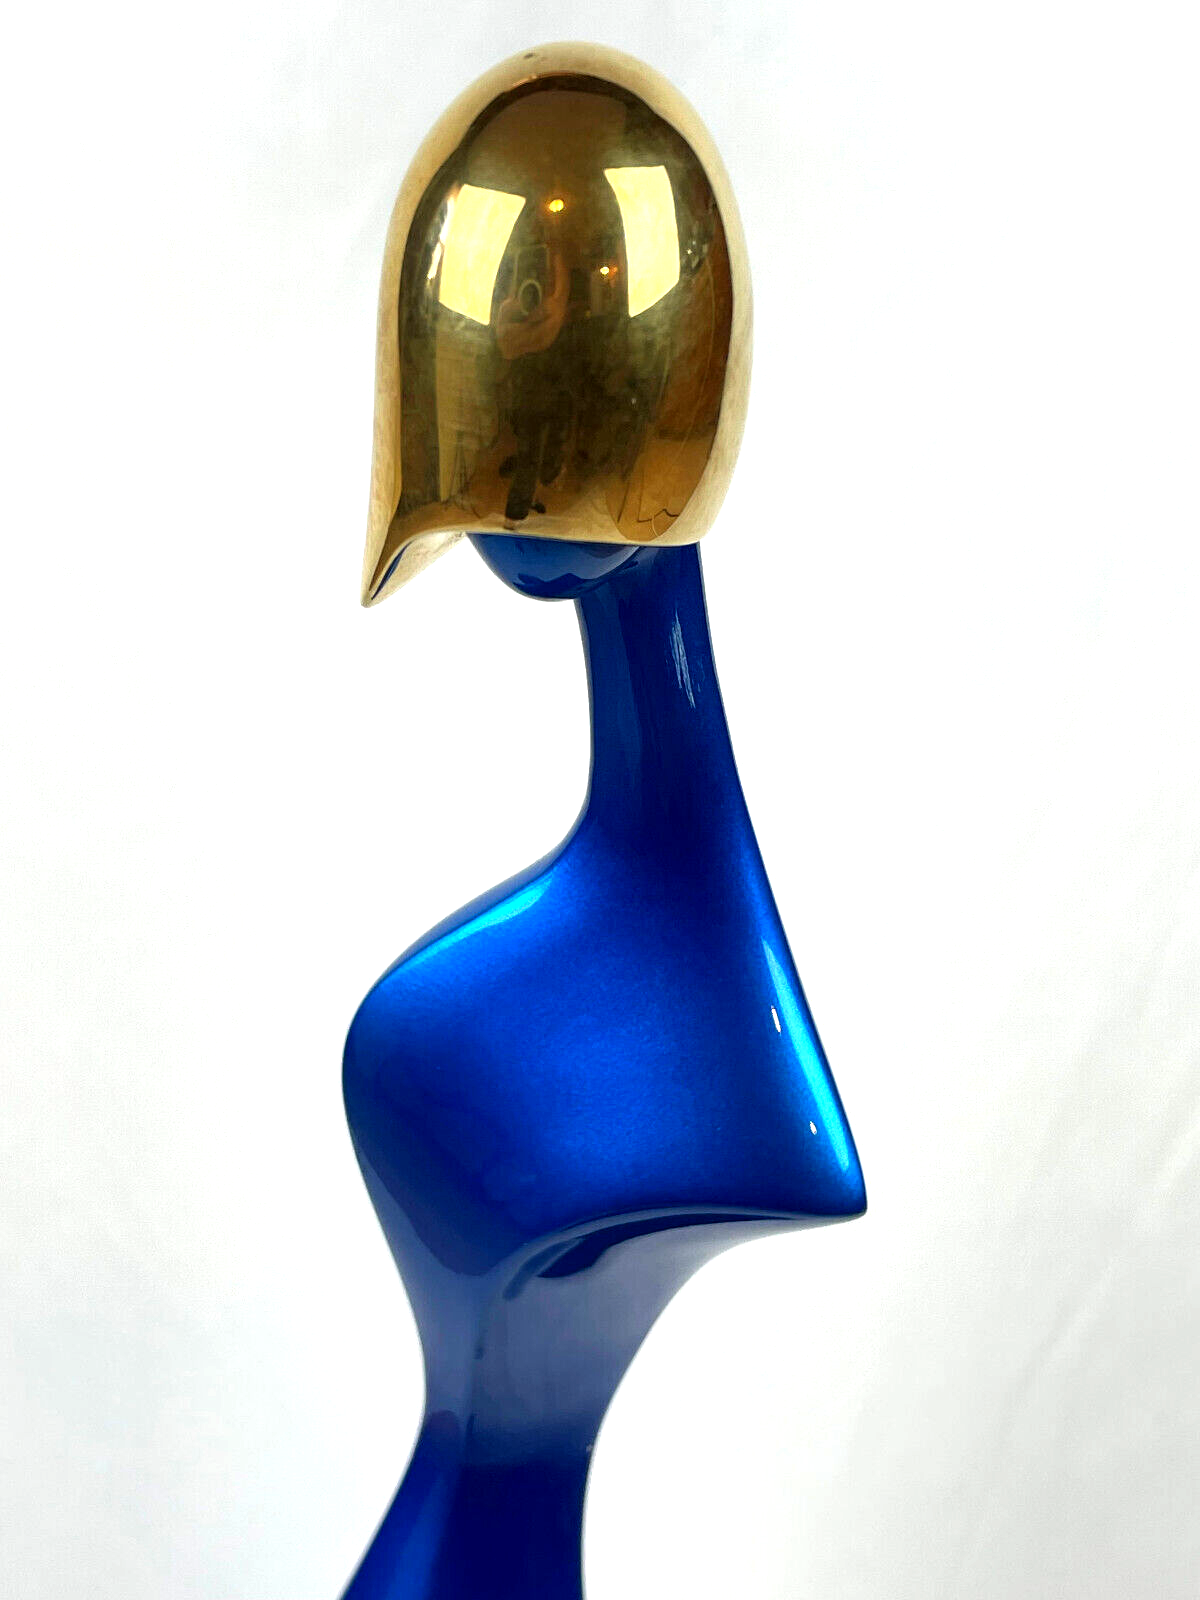 Paul Braslow L/E #28/60 Bronze Sculpture "Paris 3" Blue & Gilt Female Form